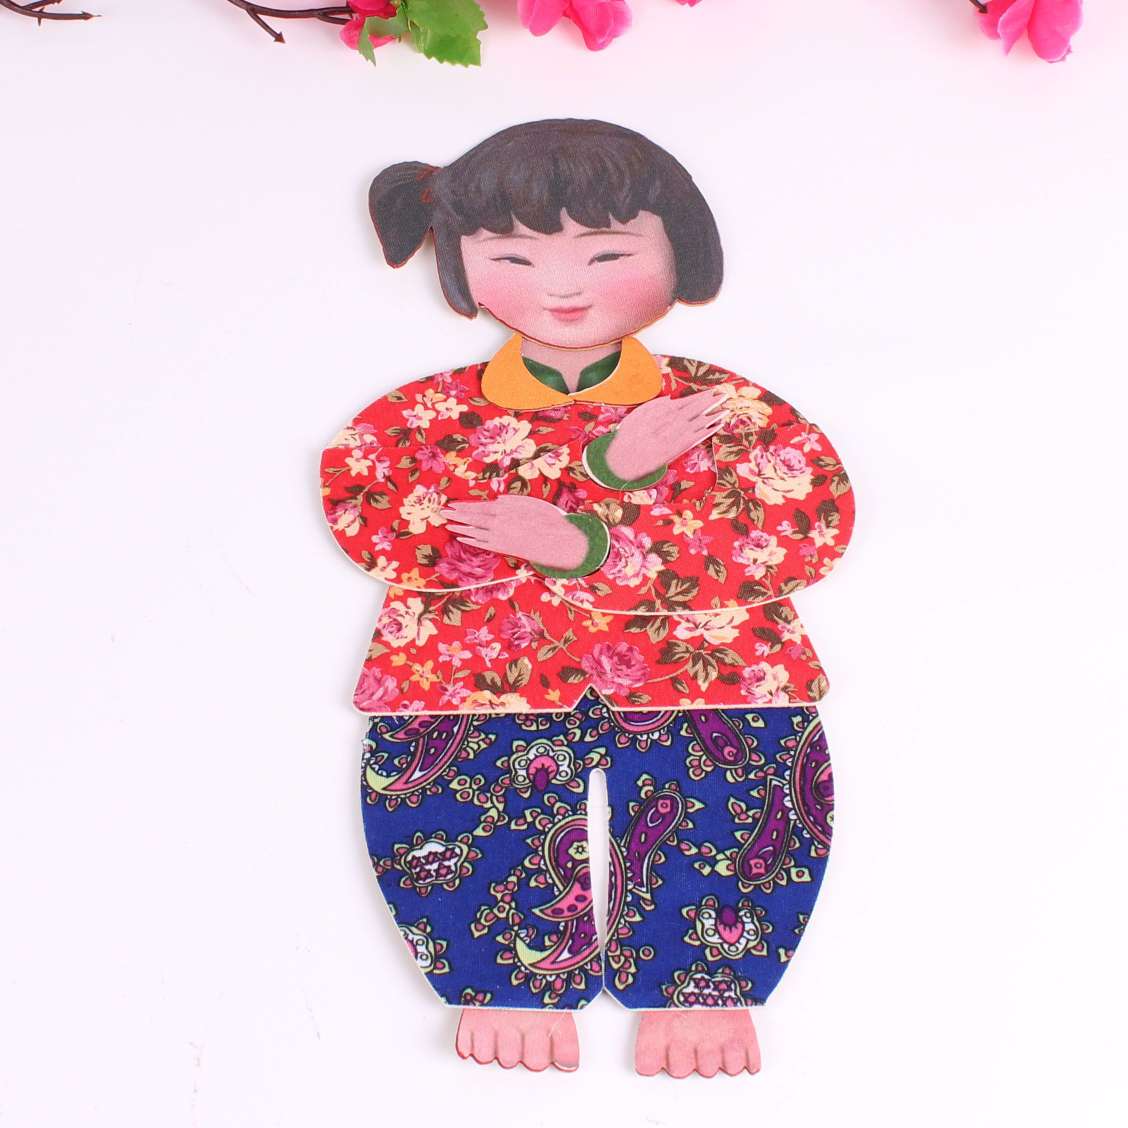 幼儿园儿童手工材料制作中国梦娃DIY材料中国风益智玩具拼图玩具产品图